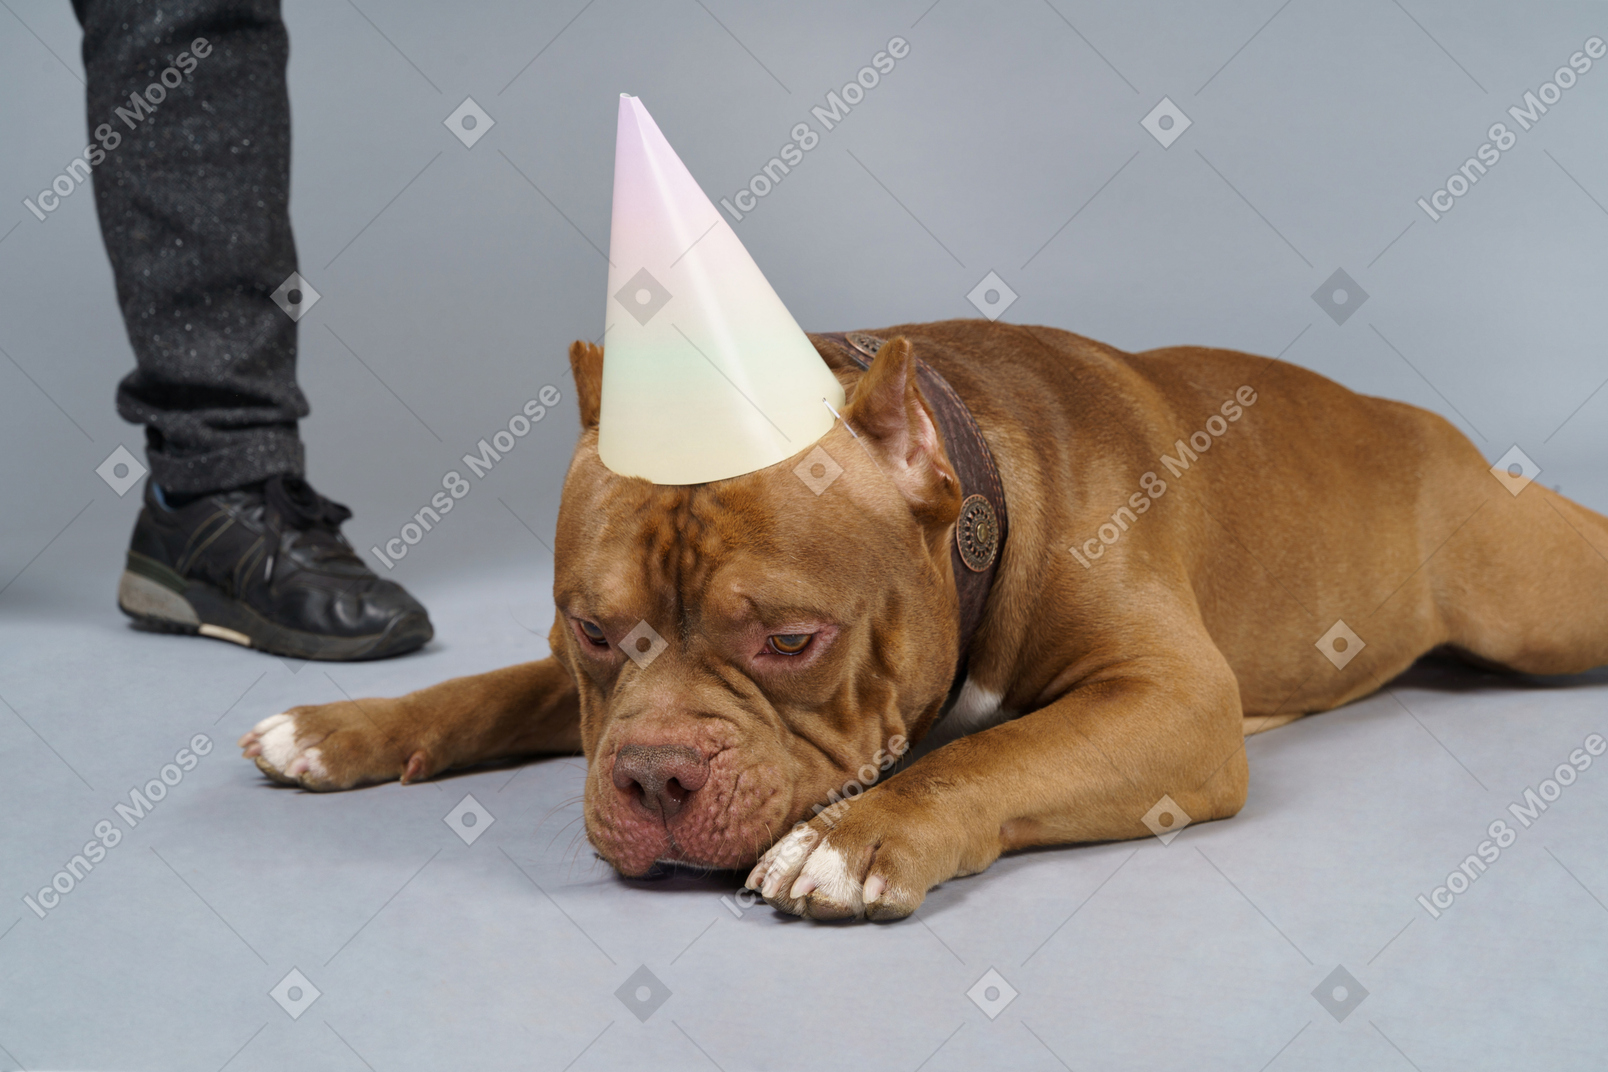 Nahaufnahme einer traurigen braunen bulldogge in einem hundehalsband und einer kappe, die unten schauen und nahe menschlichen beinen liegen